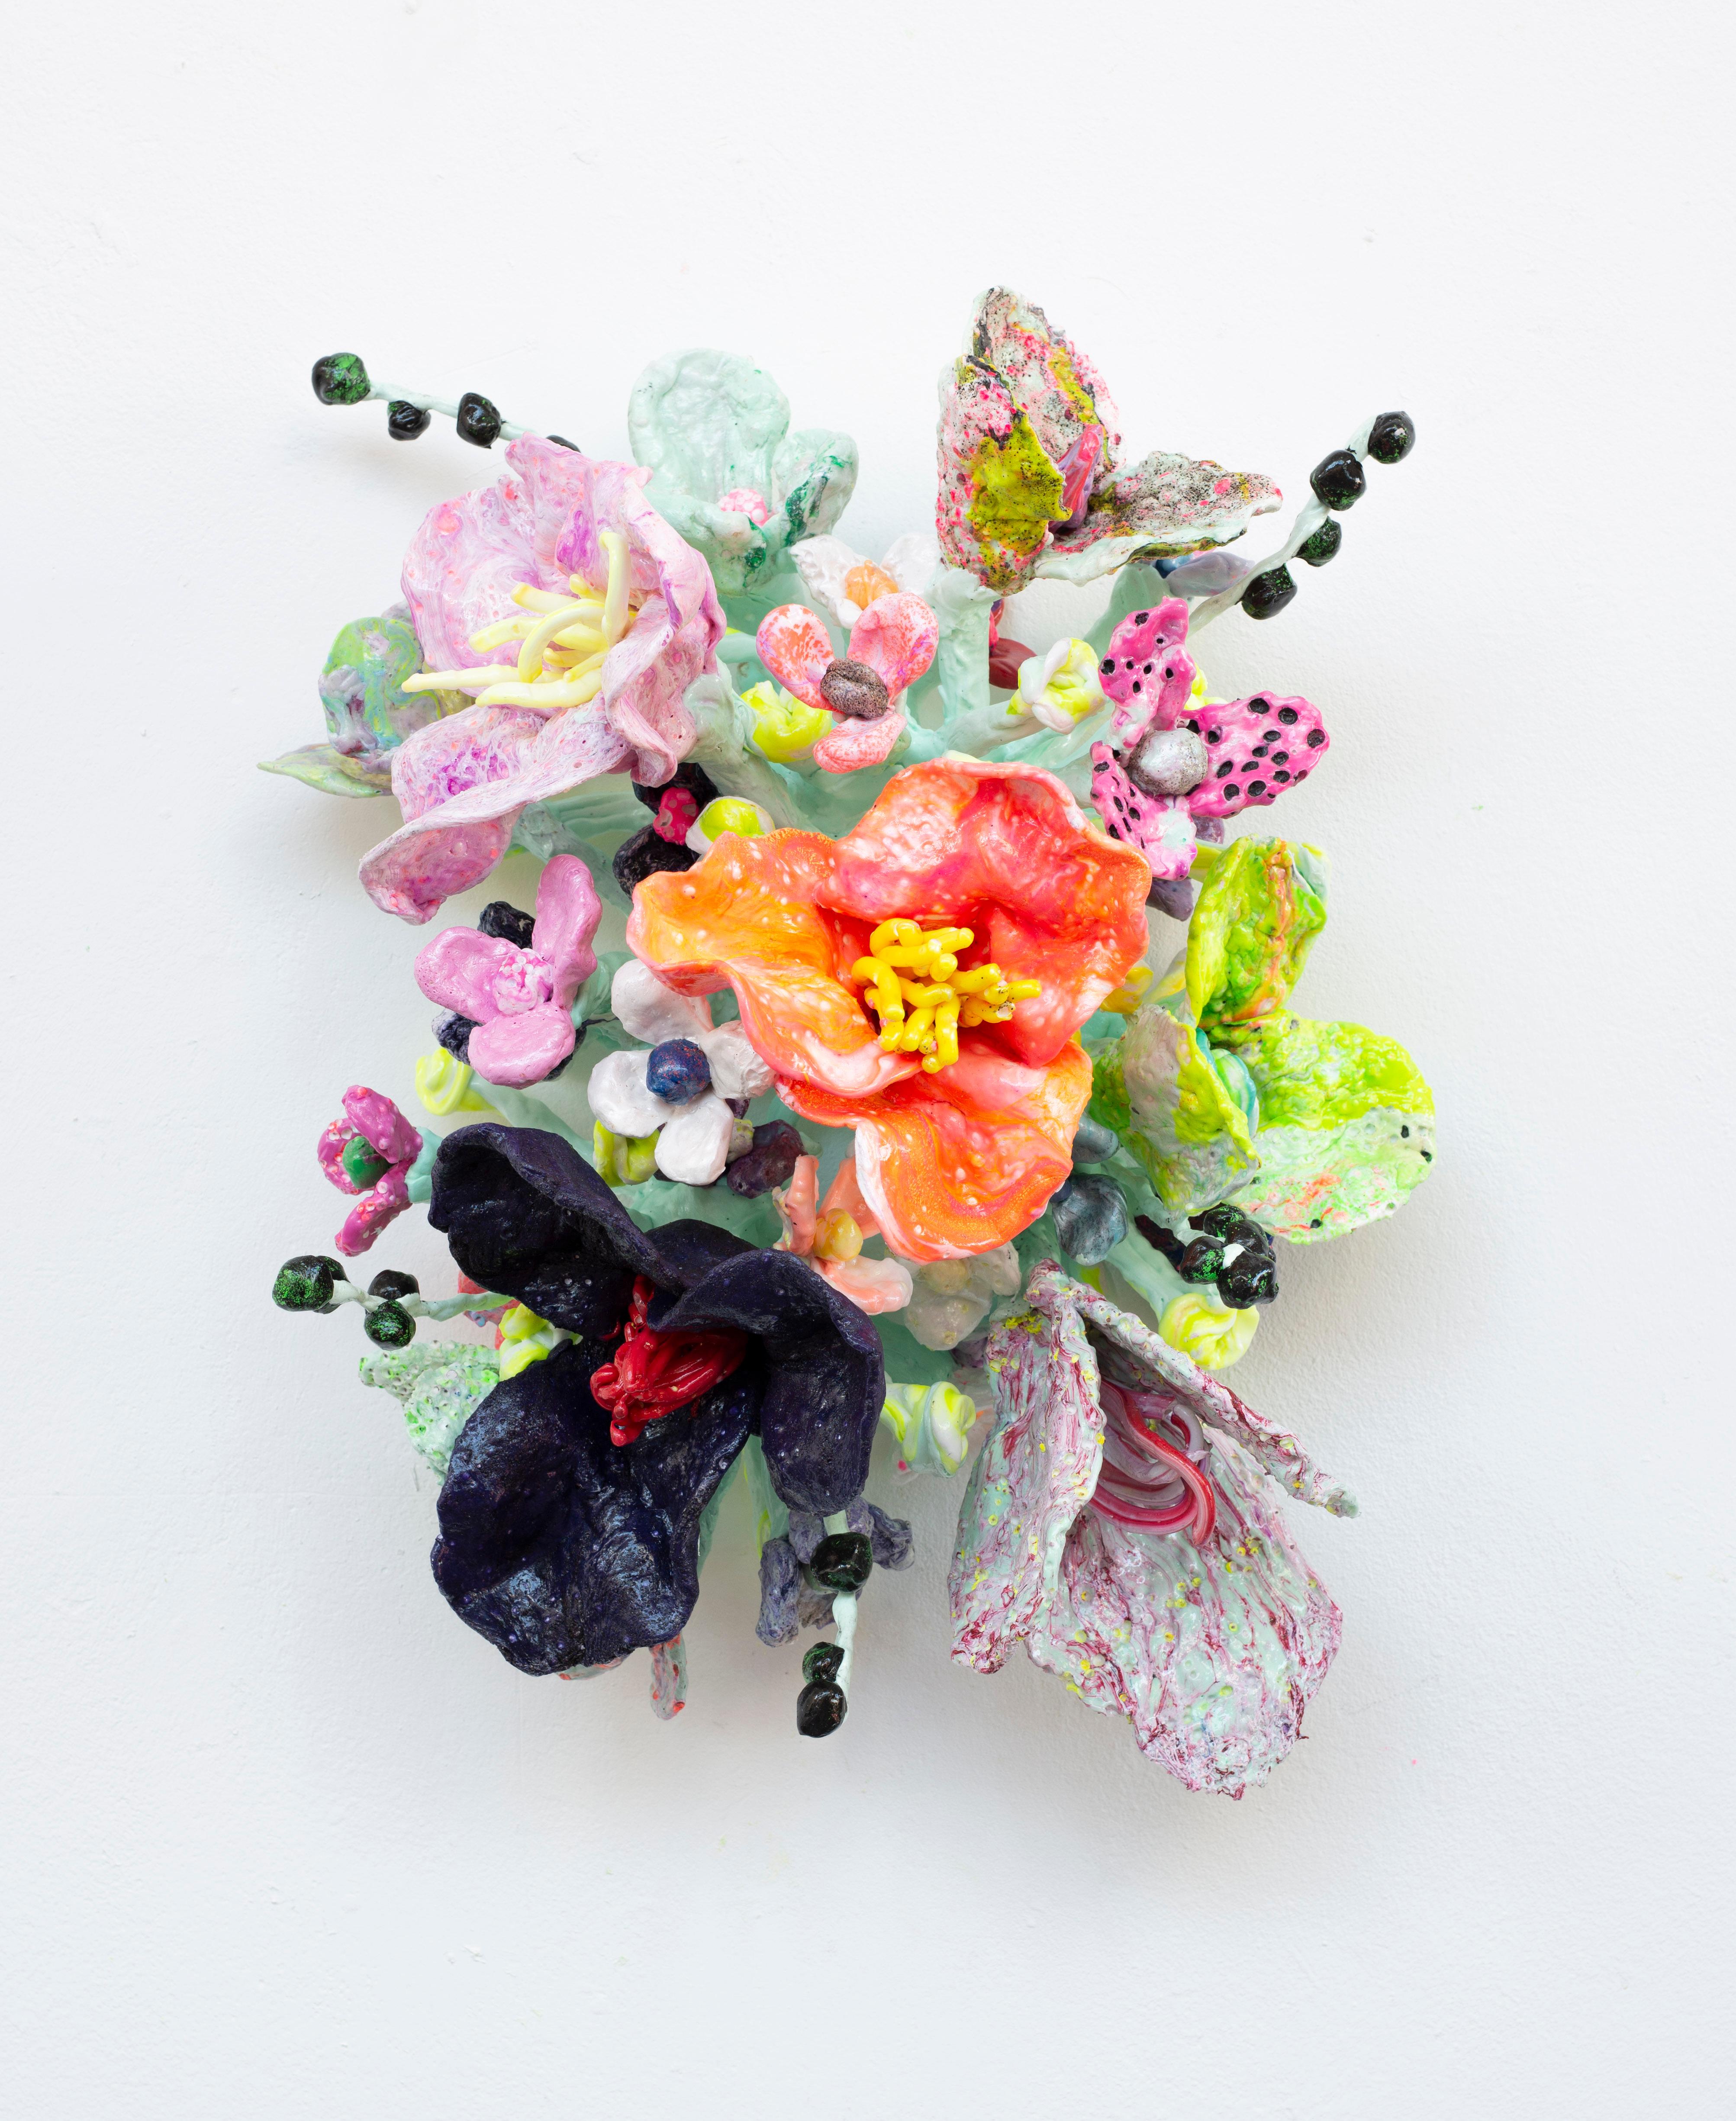 Flower Bonanza' orange-black-green - Mixed Media Art by Stefan Gross